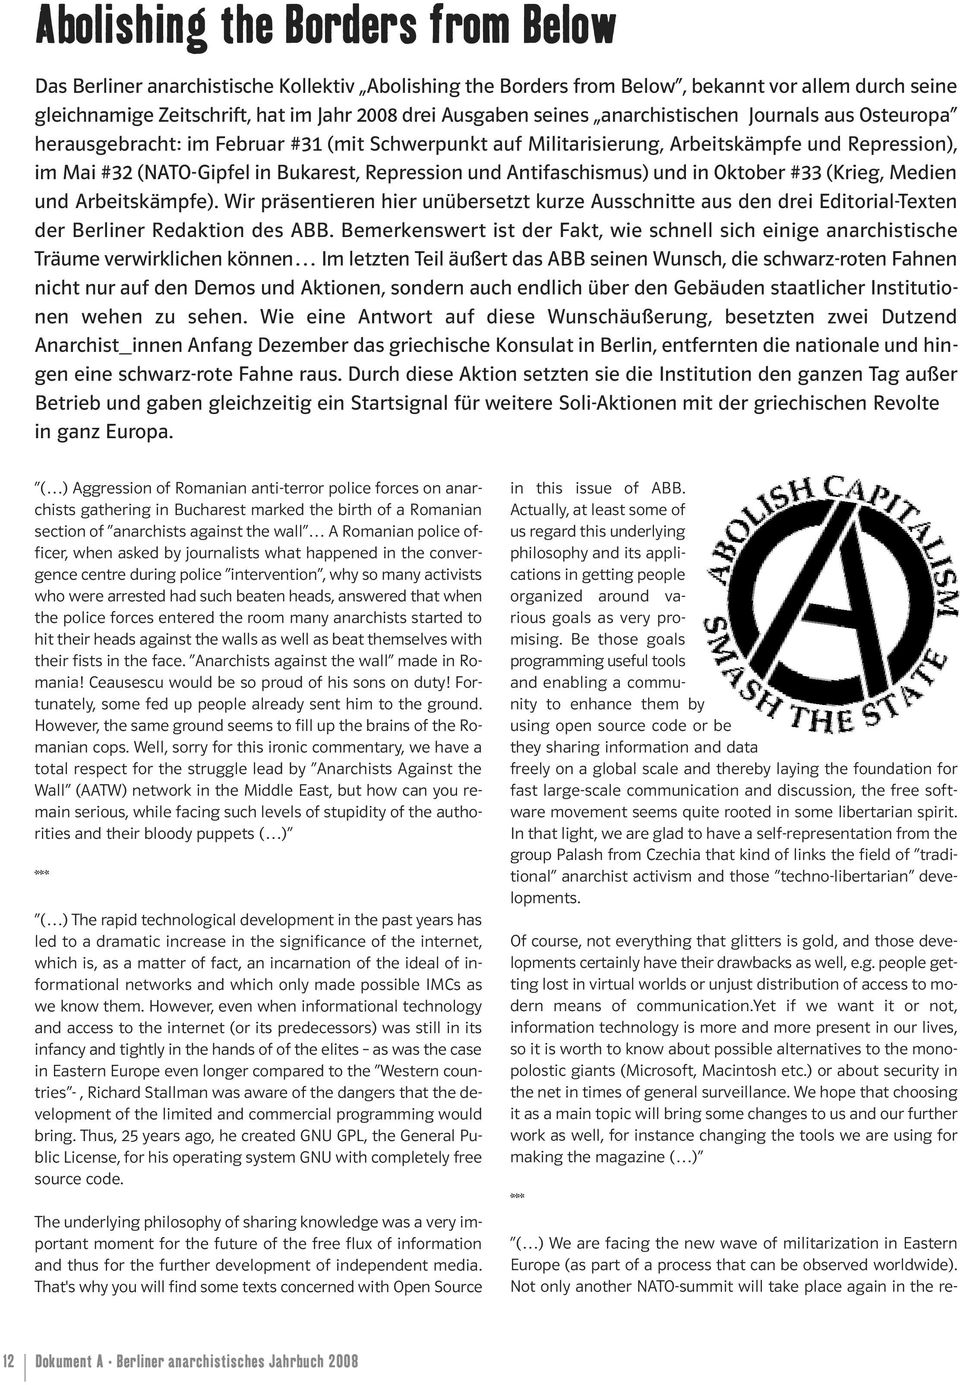 Antifaschismus) und in Oktober #33 (Krieg, Medien und Arbeitskämpfe). Wir präsentieren hier unübersetzt kurze Ausschnitte aus den drei Editorial-Texten der Berliner Redaktion des ABB.